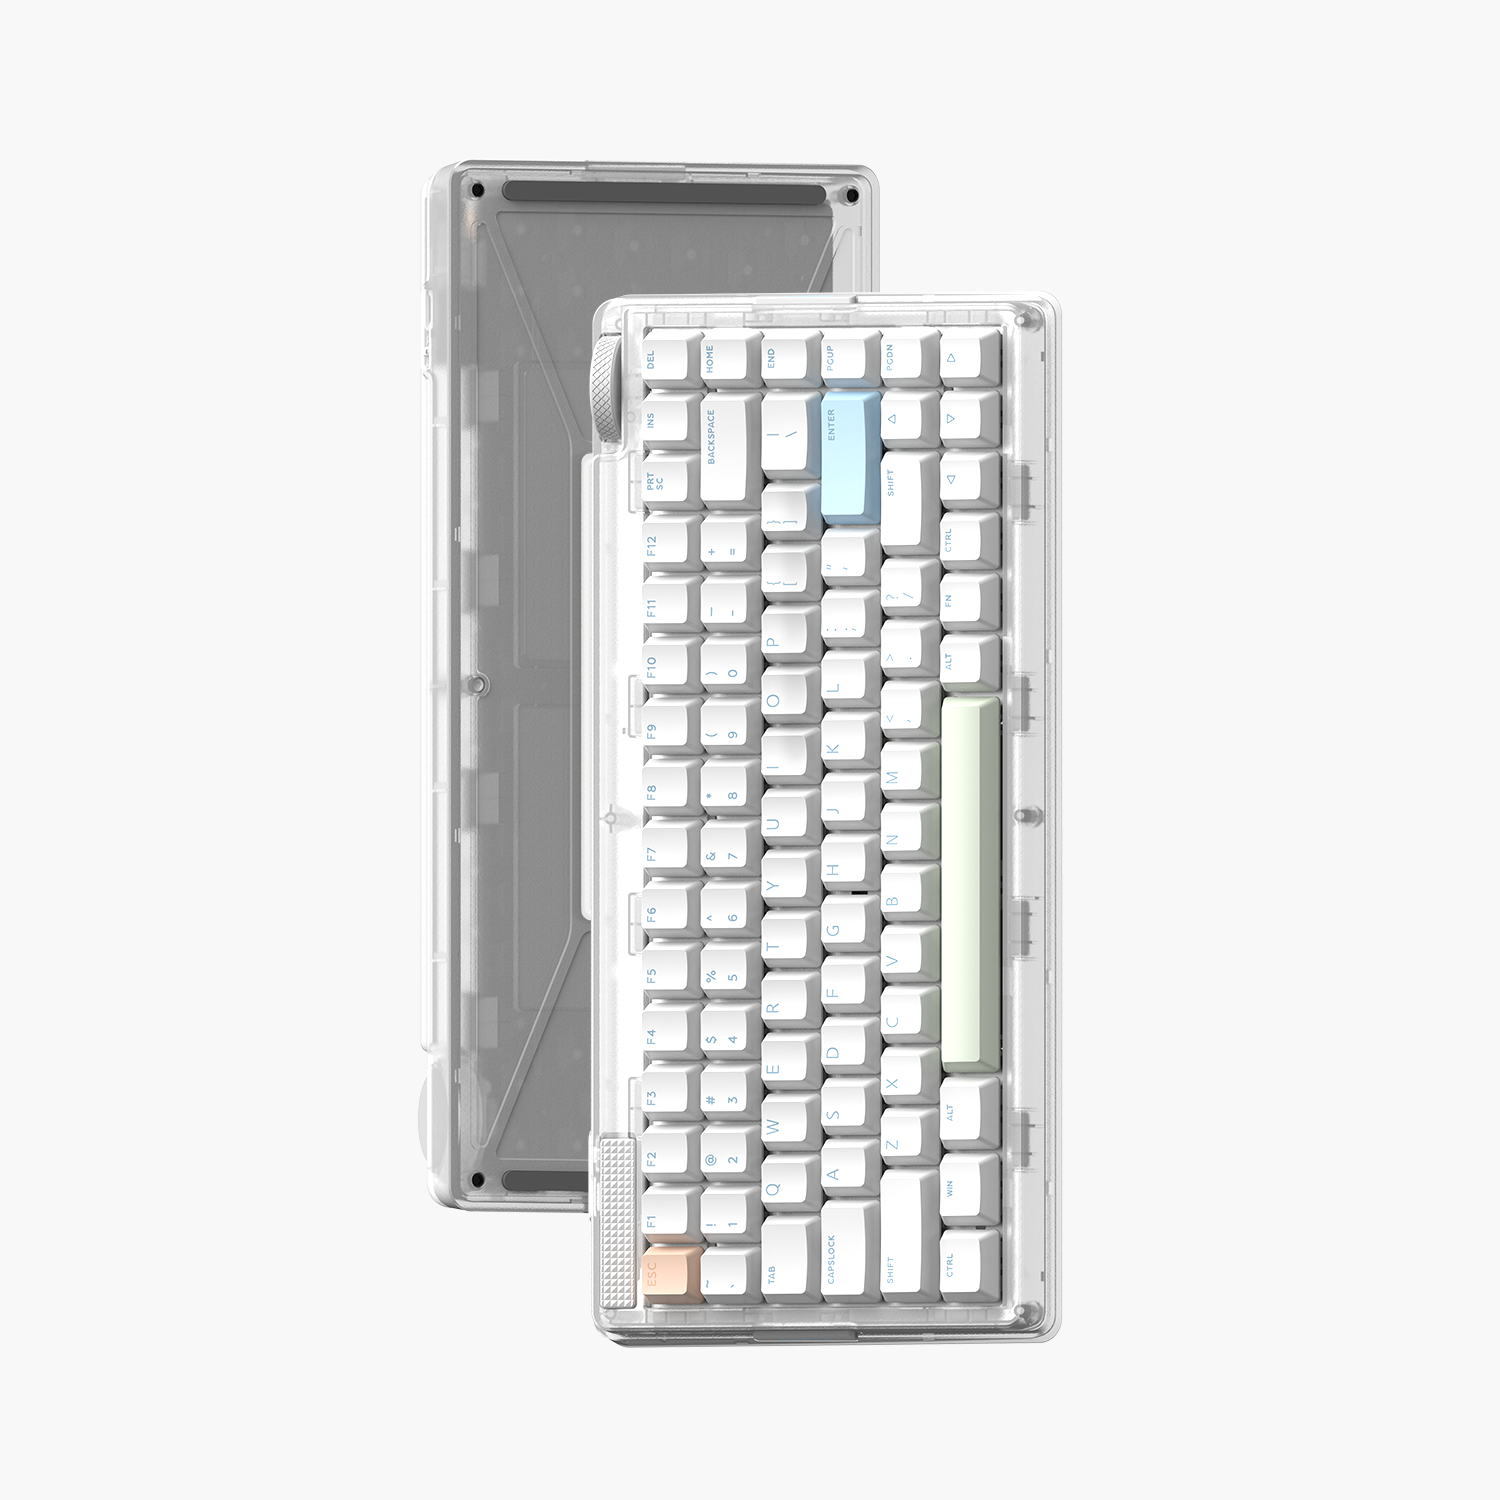 MT80 White Mechanical Keyboard